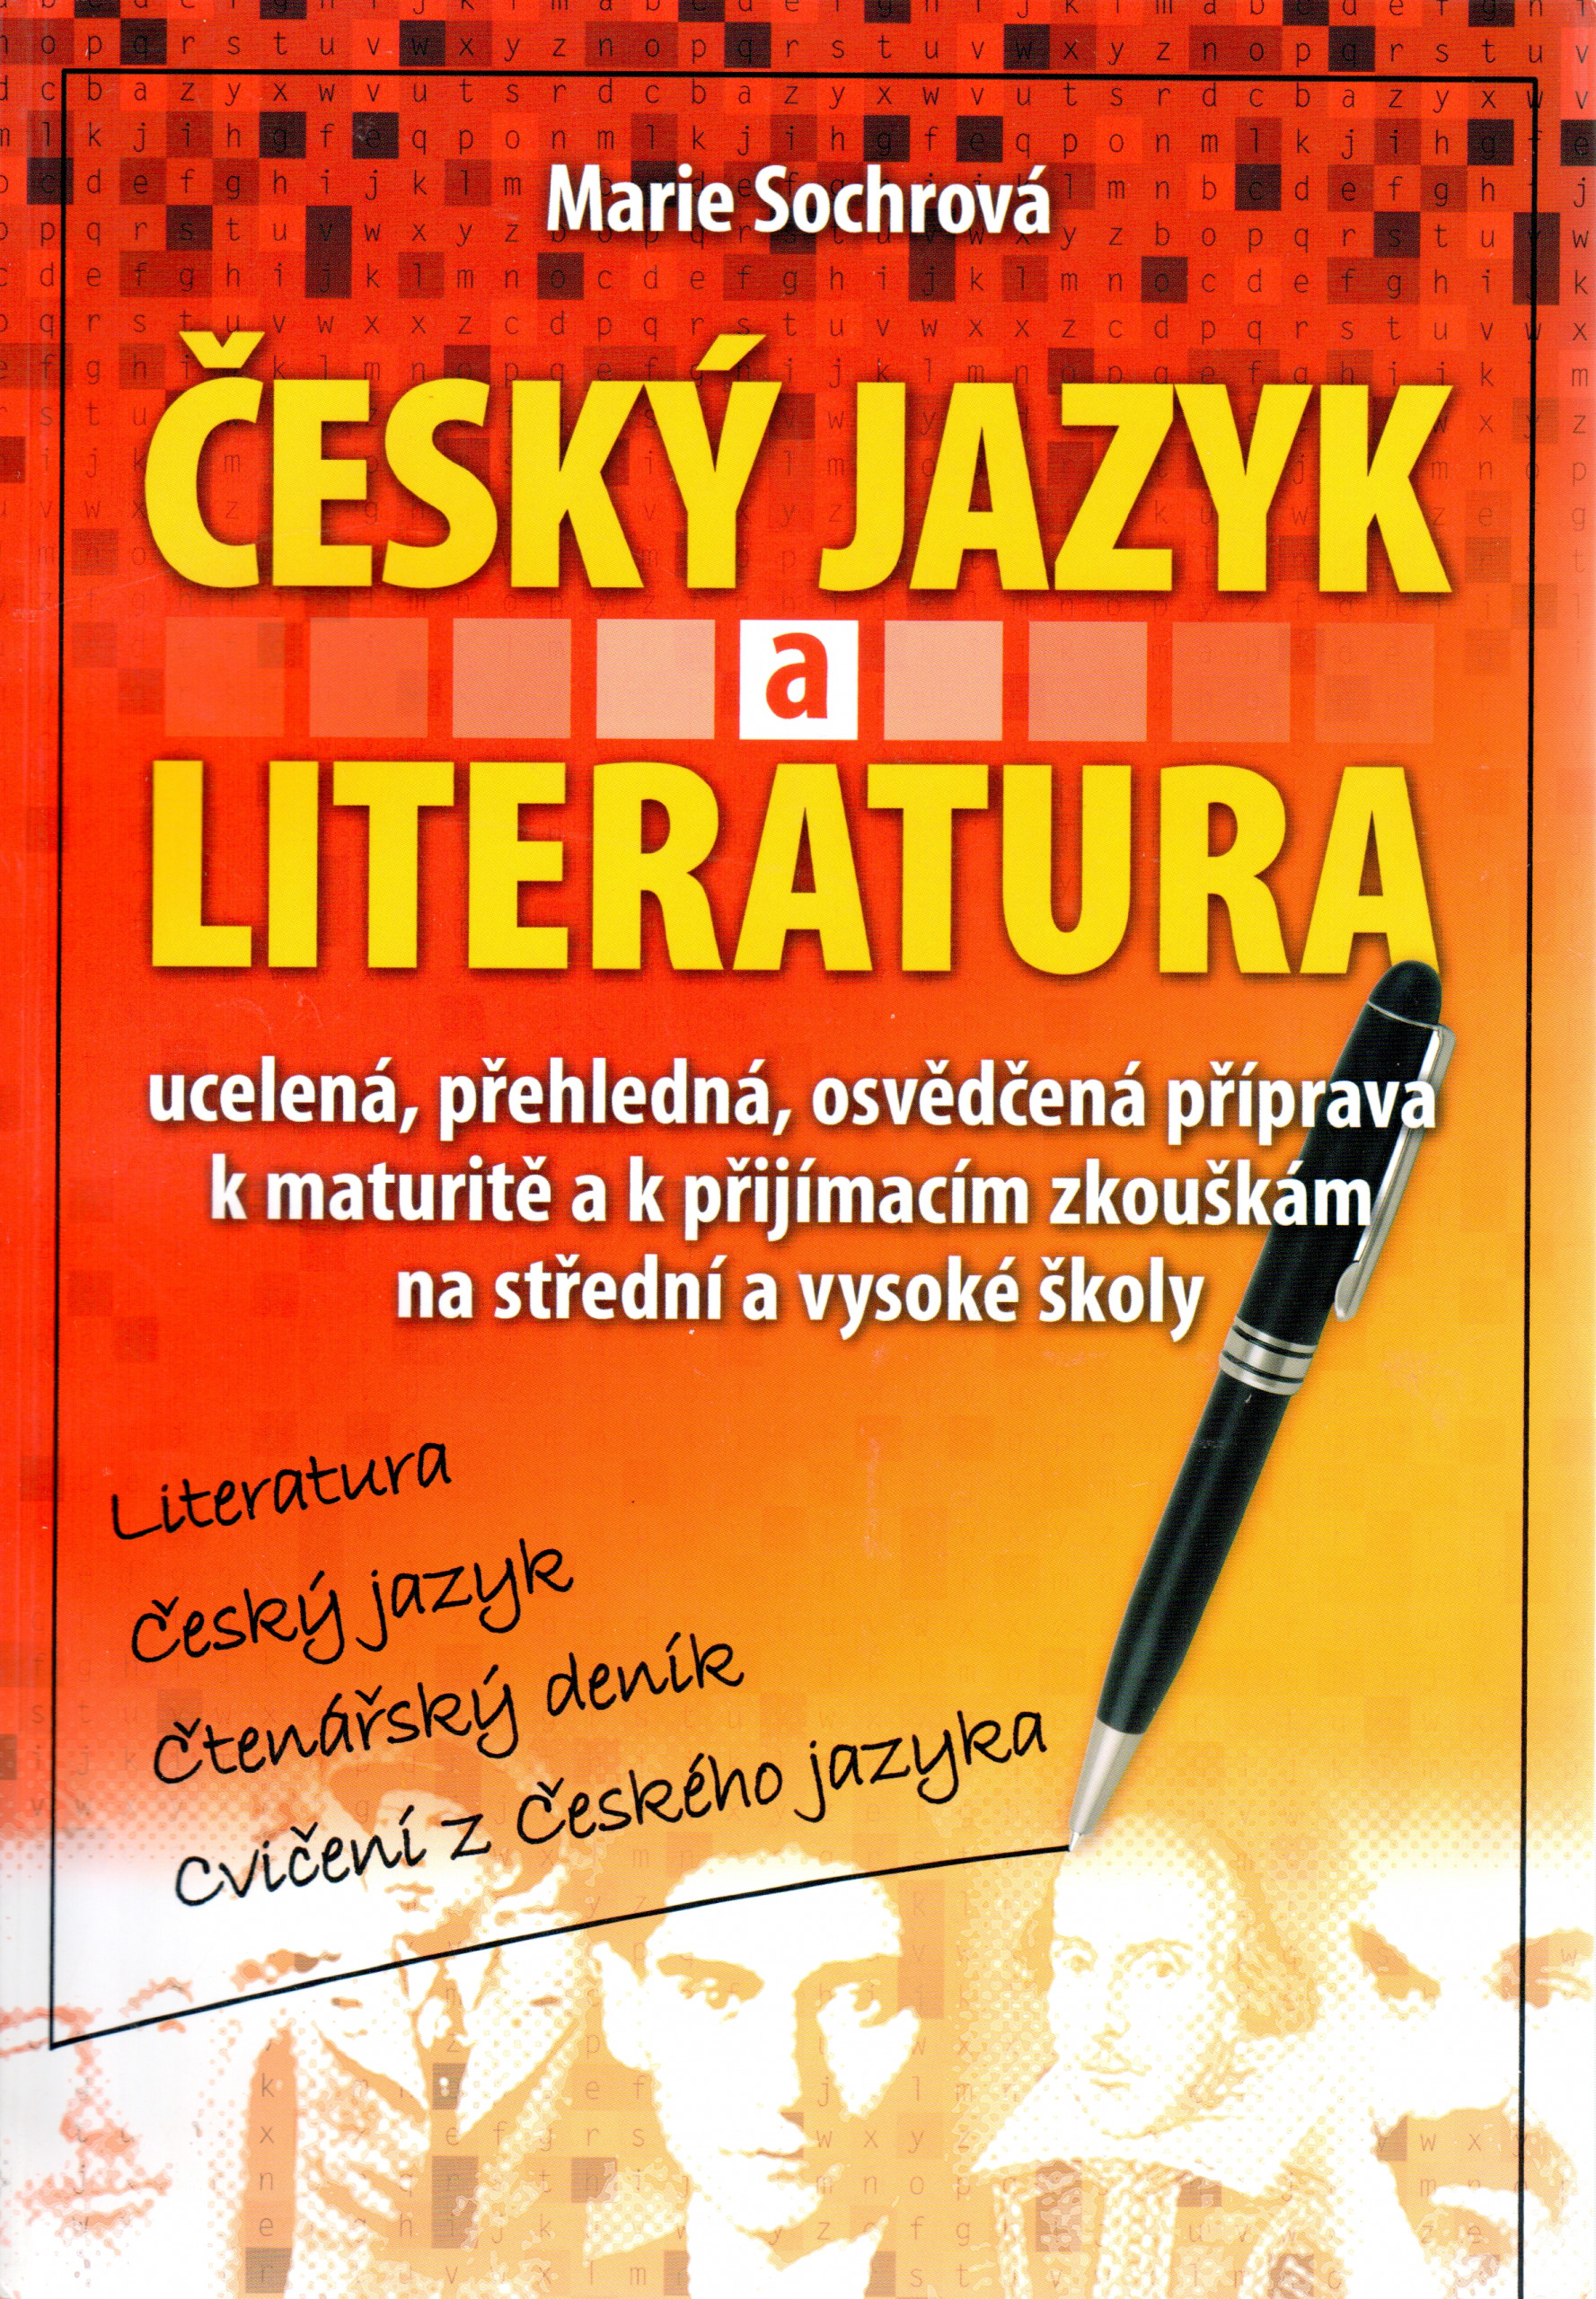 Český jazyk a literatura : ucelená, přehledná, osvědčená příprava k maturitě a k přijímacím zkouškám na střední a vysoké školy - Náhled učebnice